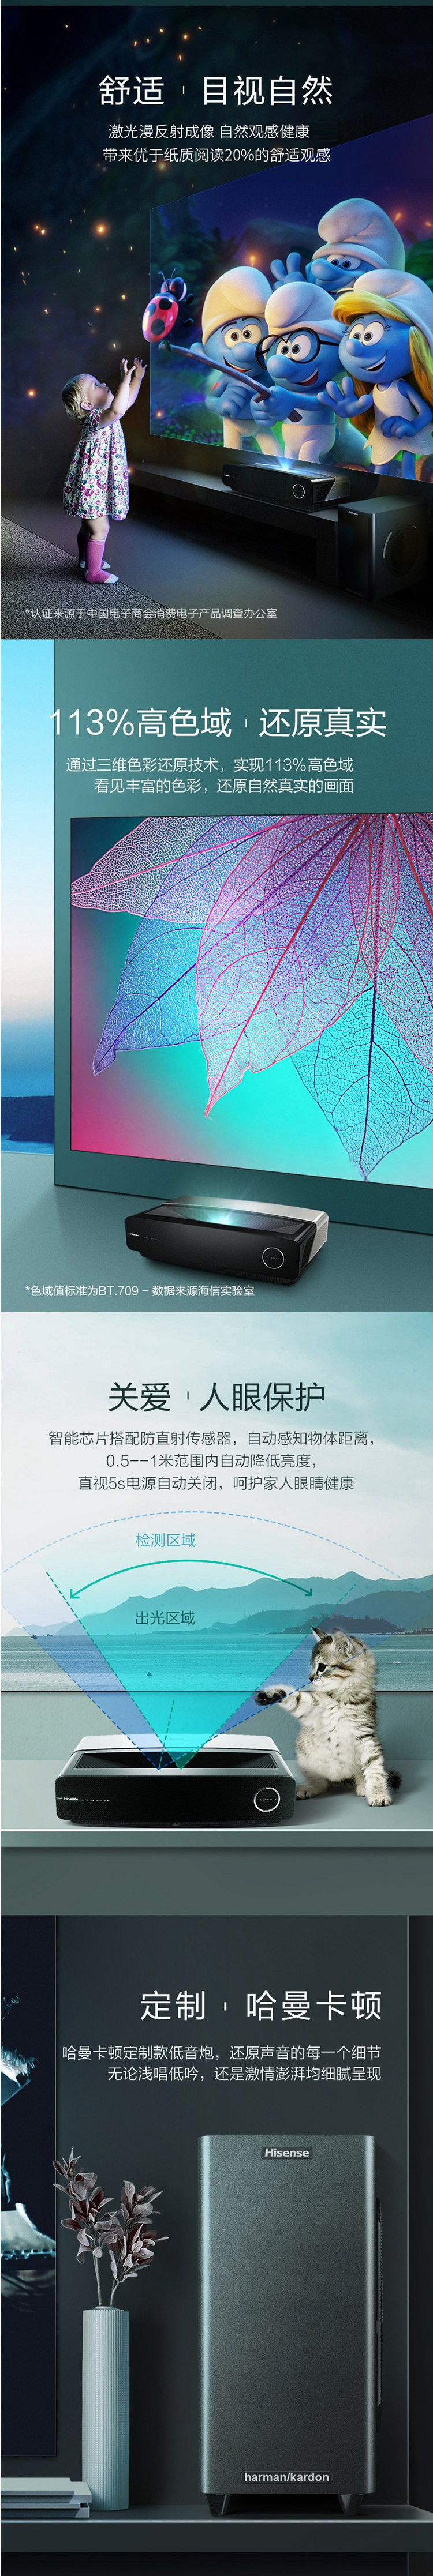 海信/Hisense 电视HZ80L5 4K人工智能影院 激光电视机